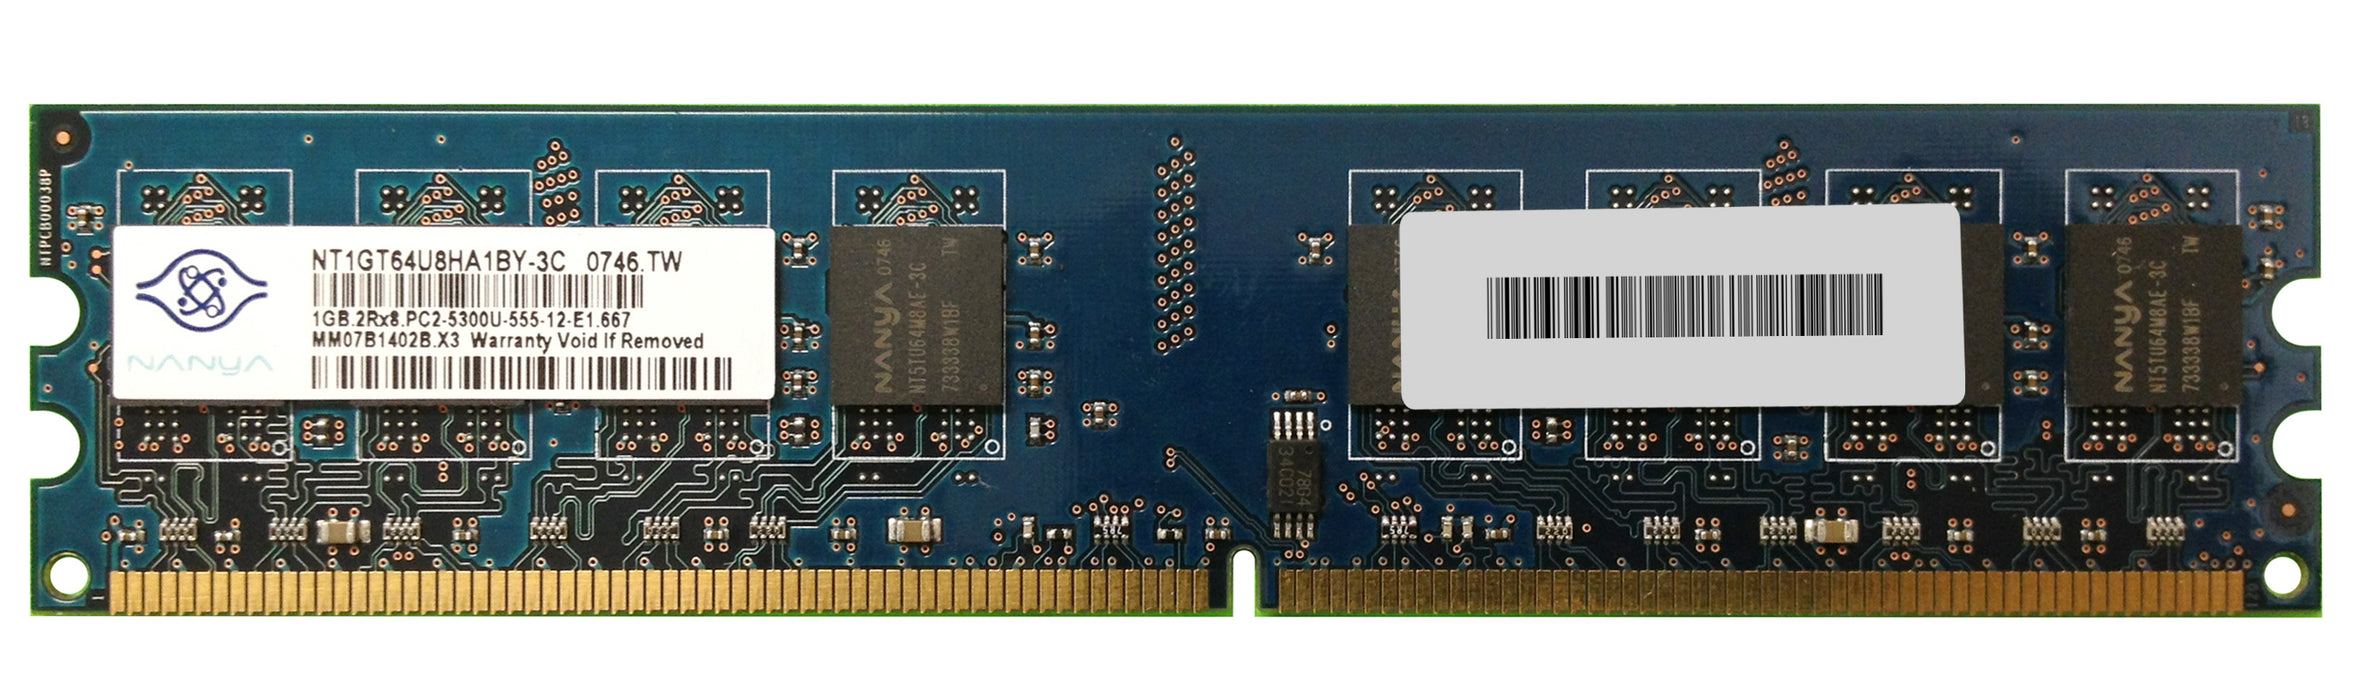 NT1GT64U8HA1BY-3C Nanya 1GB PC2-5300 DDR2-667MHz non-ECC Unbuffered CL5 240-Pin